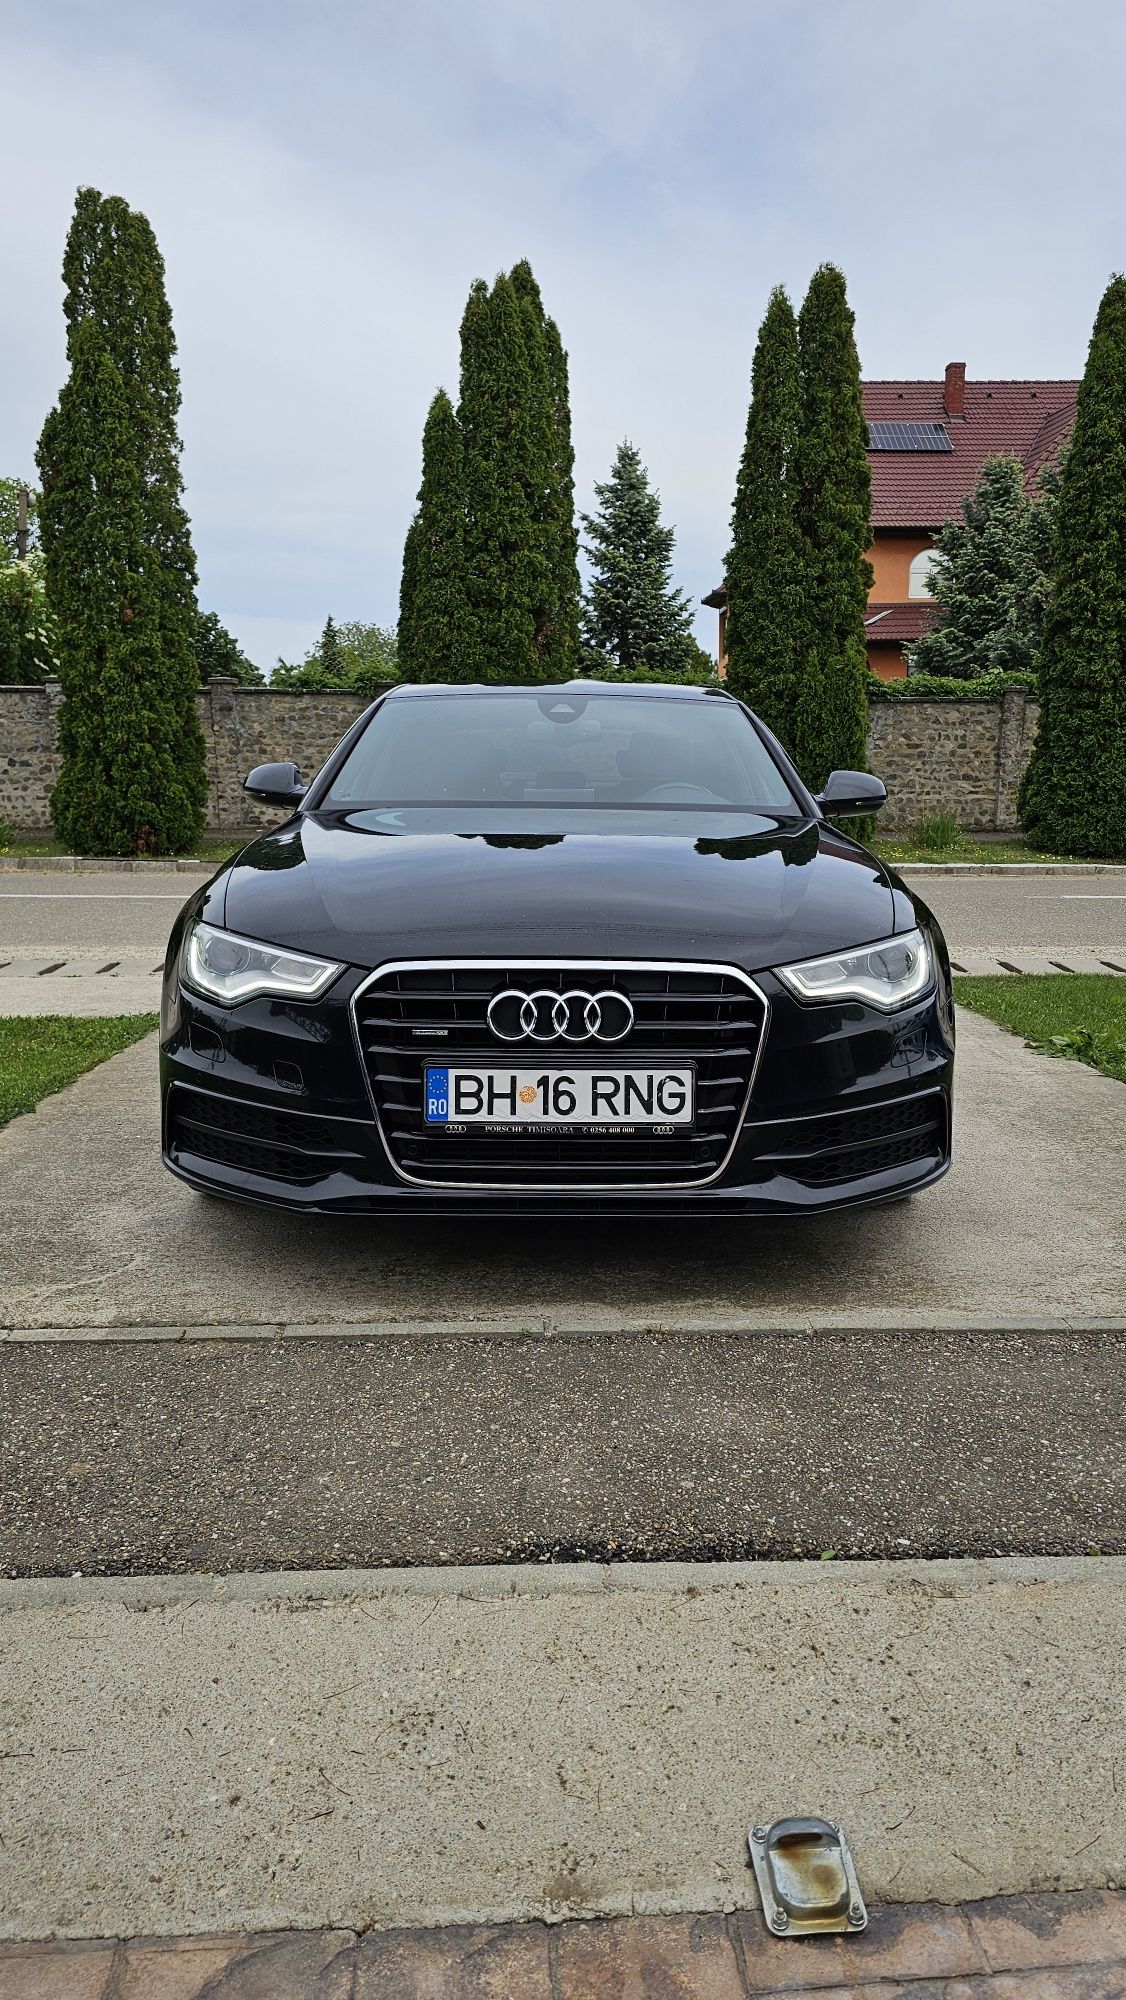 Autoturism Audi A6